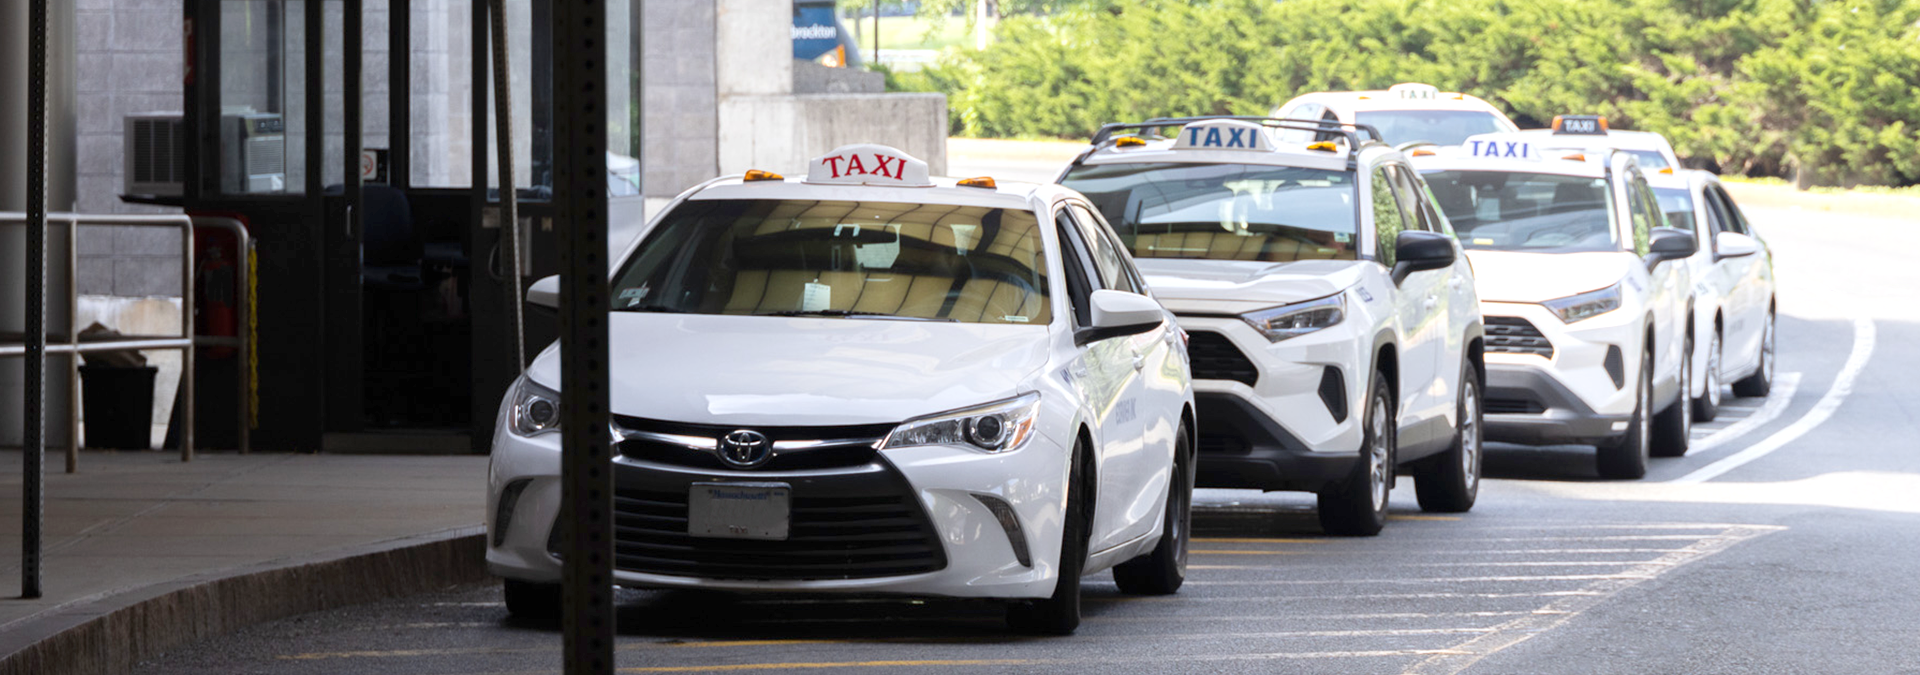 Taxis at Boston Logan